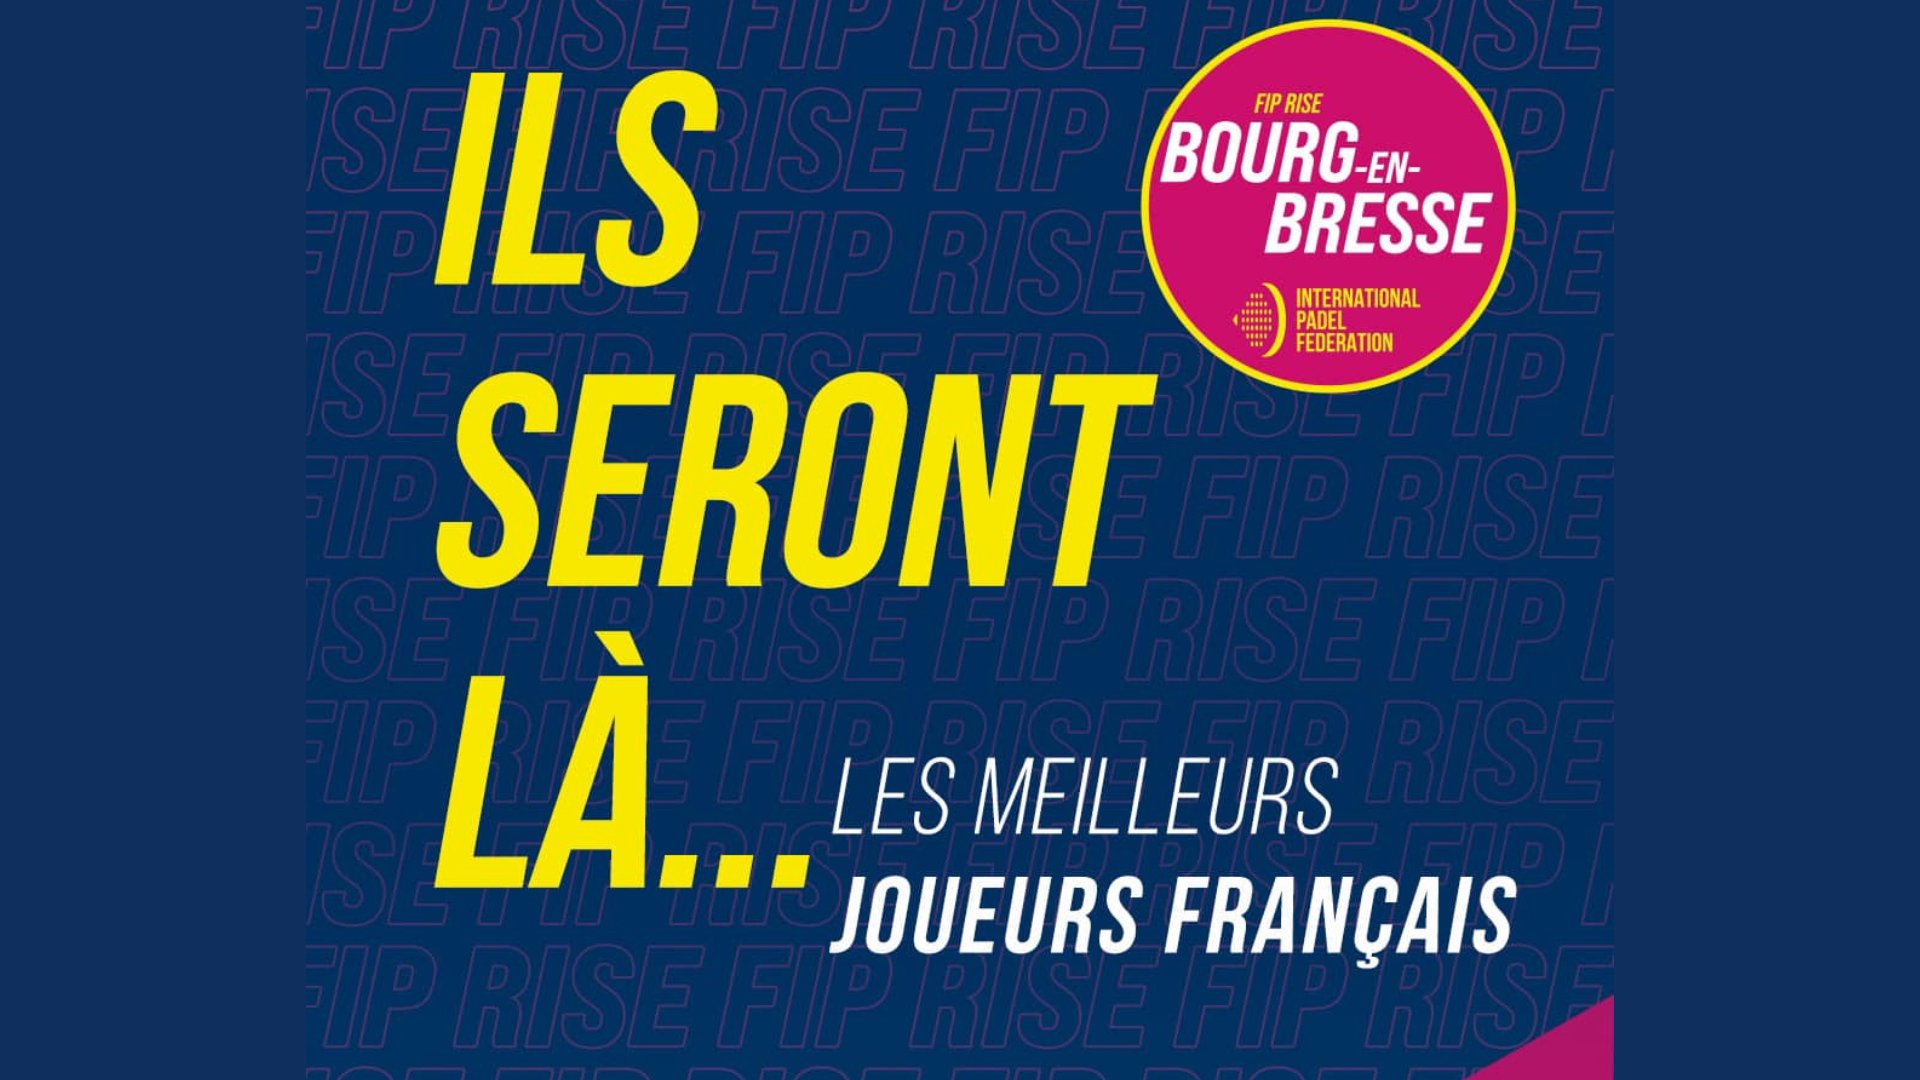 FIP Rise Bourg-en-Bresse : les meilleurs joueurs français seront là !